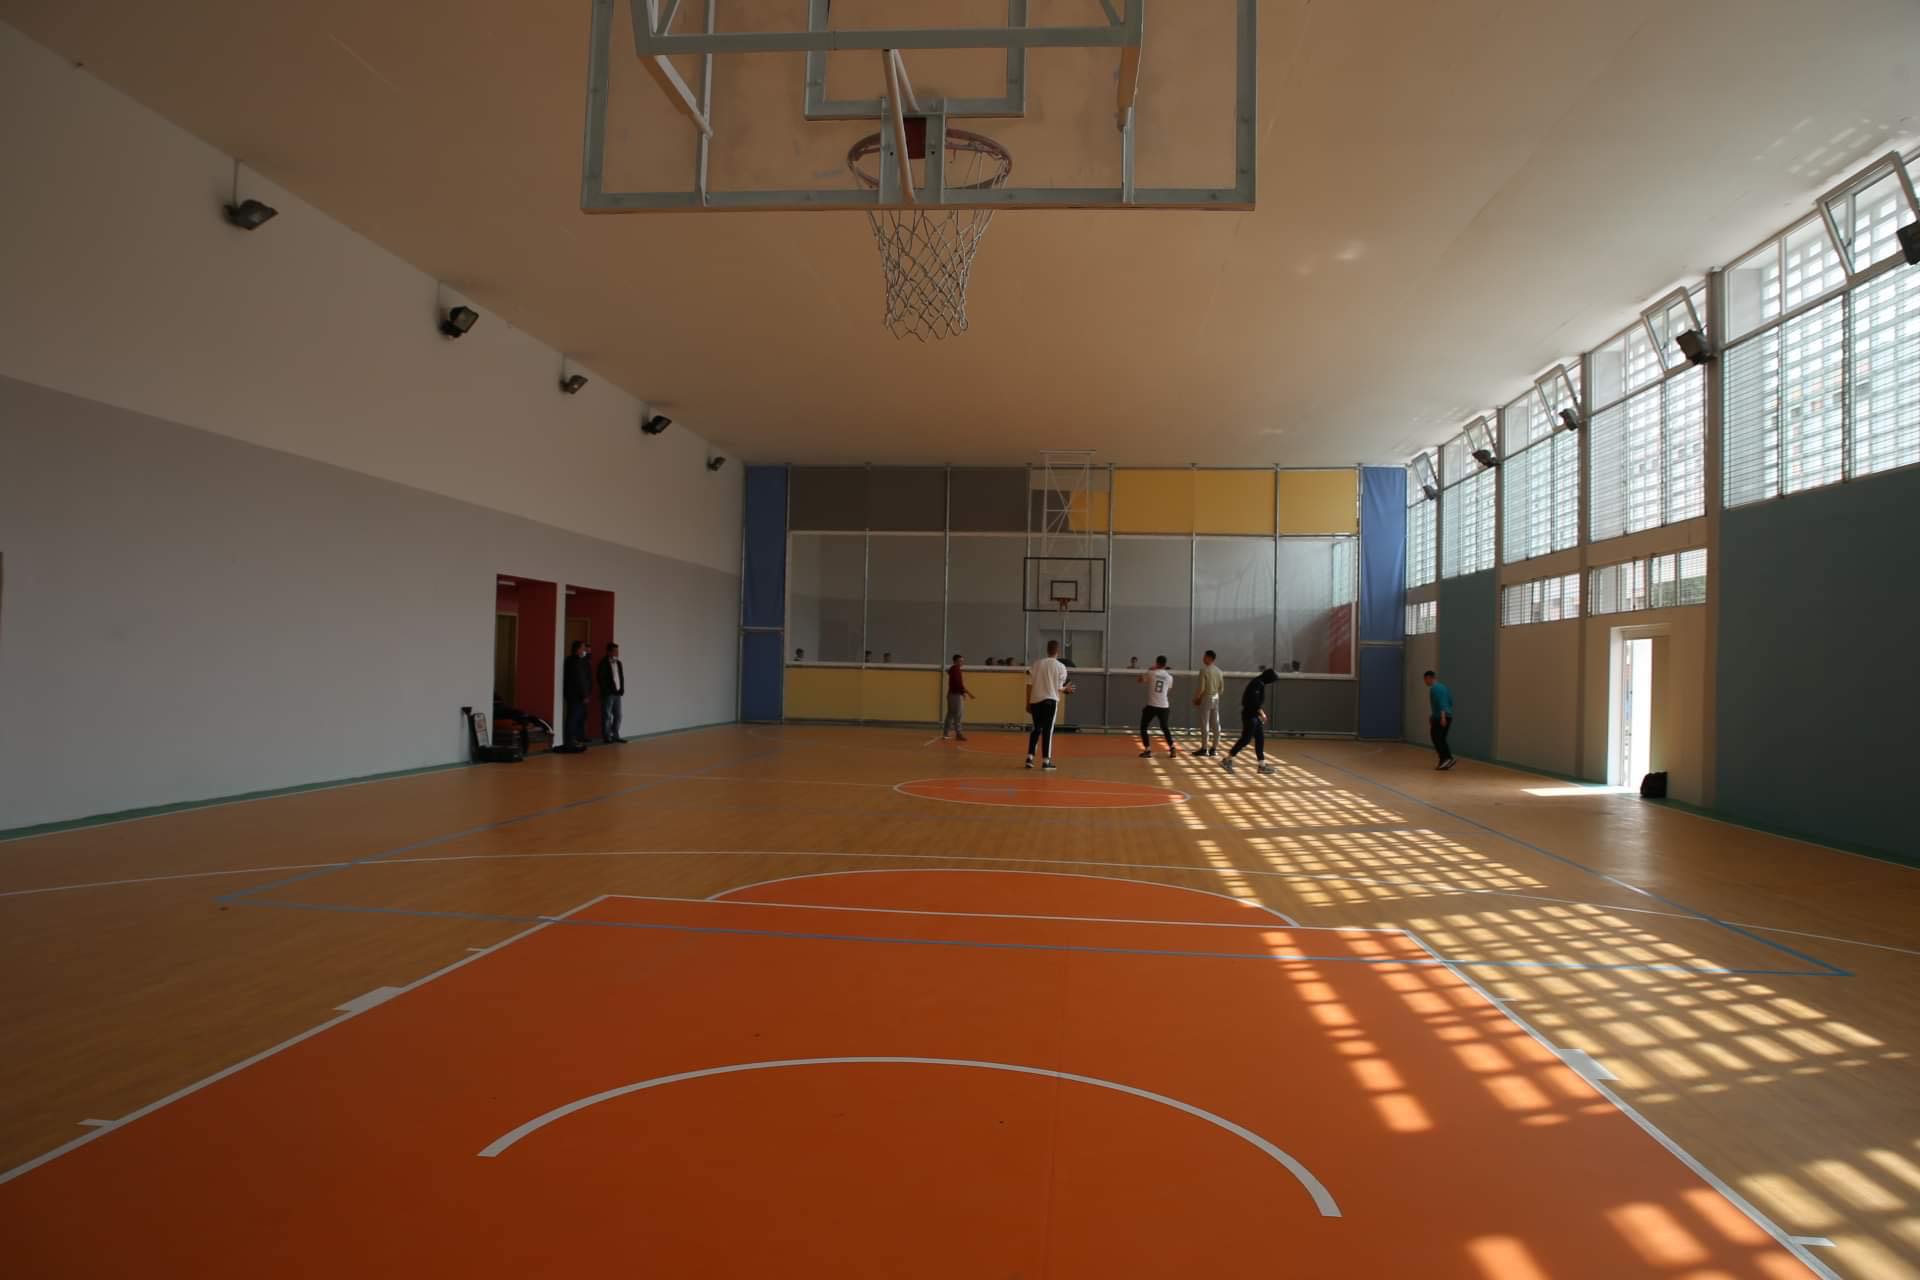 Δήμος Πειραιά: Παραδόθηκε πλήρως ανακαινισμένο το γυμναστήριο του σχολικού συγκροτήματος Τζαβέλλα